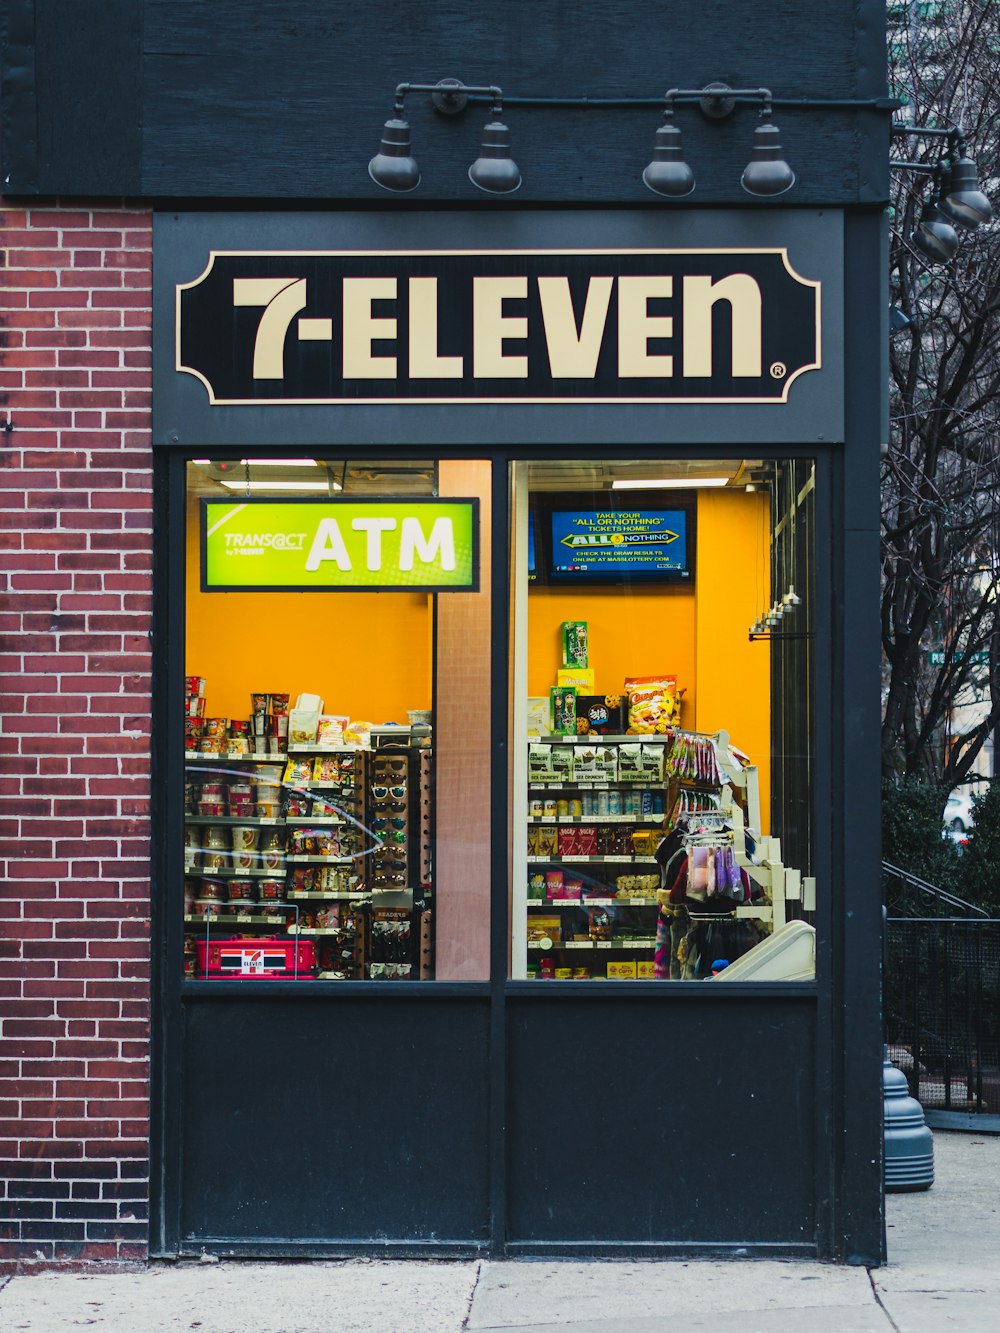 Tienda 7-Eleven durante el día